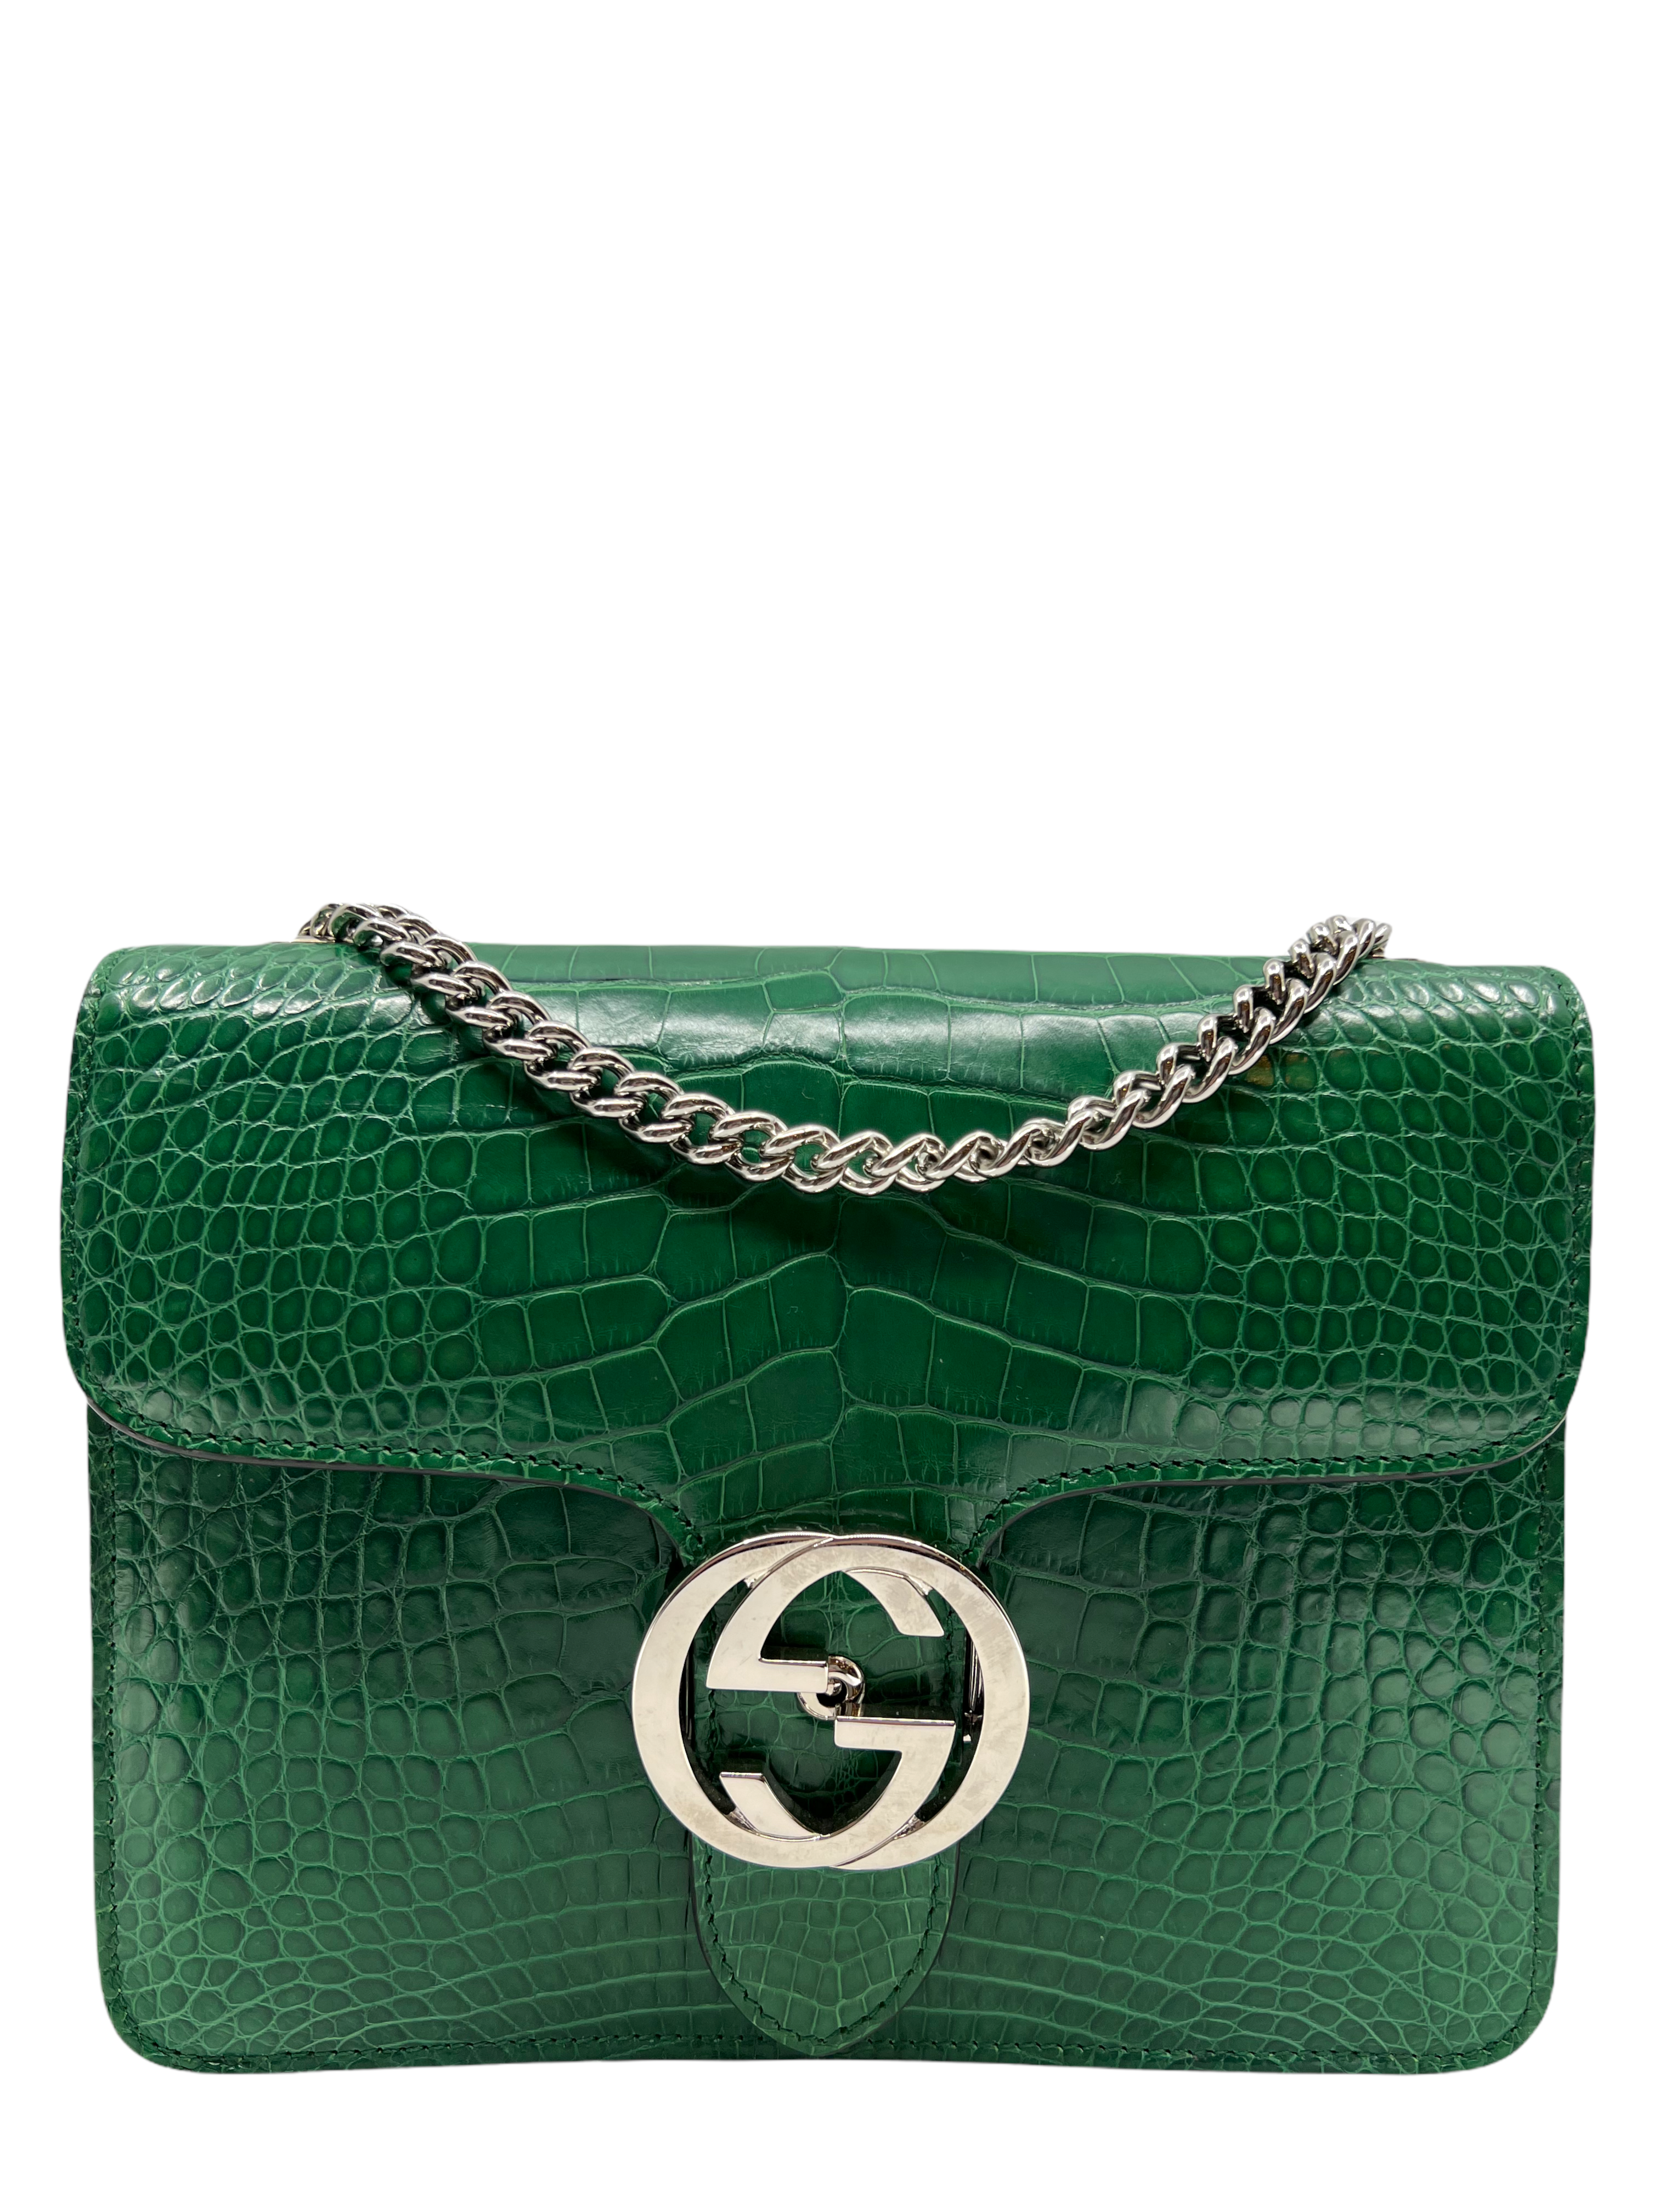 Gucci Crocodile Interlocking GG Bag Consigned Designs